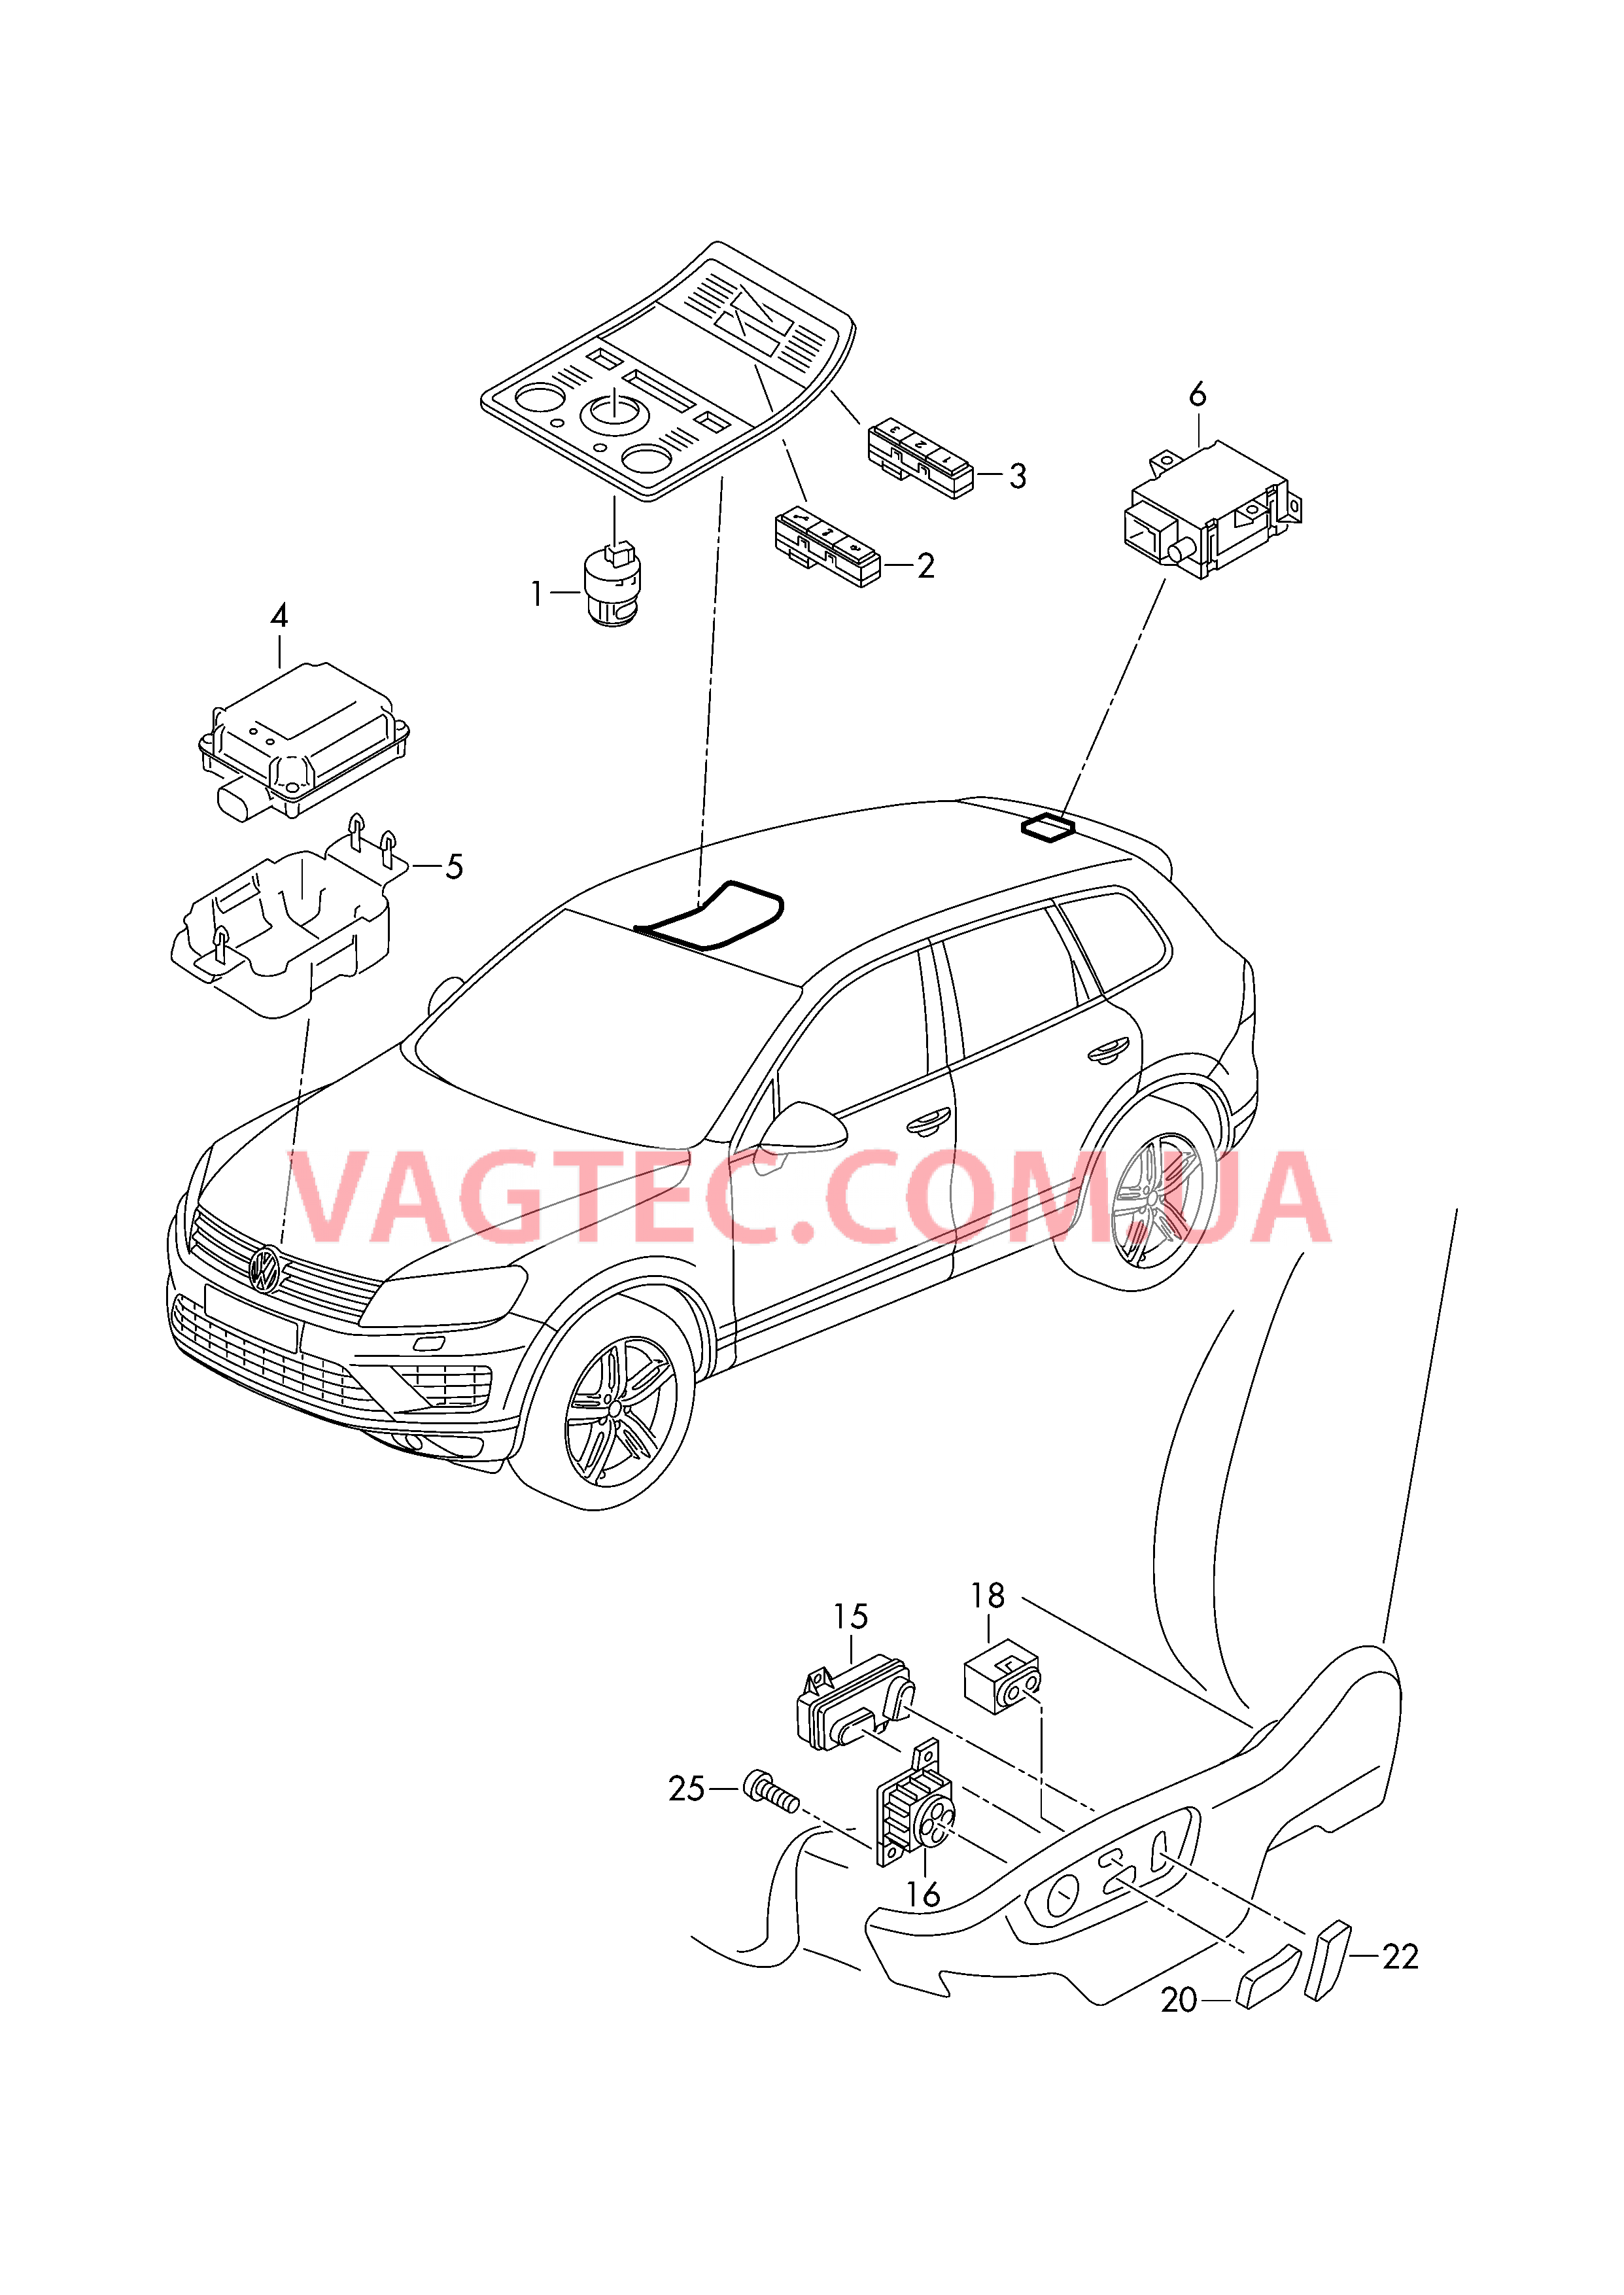 Выключатель на крыше Выкл-тель регулир-ки положения сиденья и спинки  БУ системы открывания ворот гаража  для VOLKSWAGEN Touareg 2015